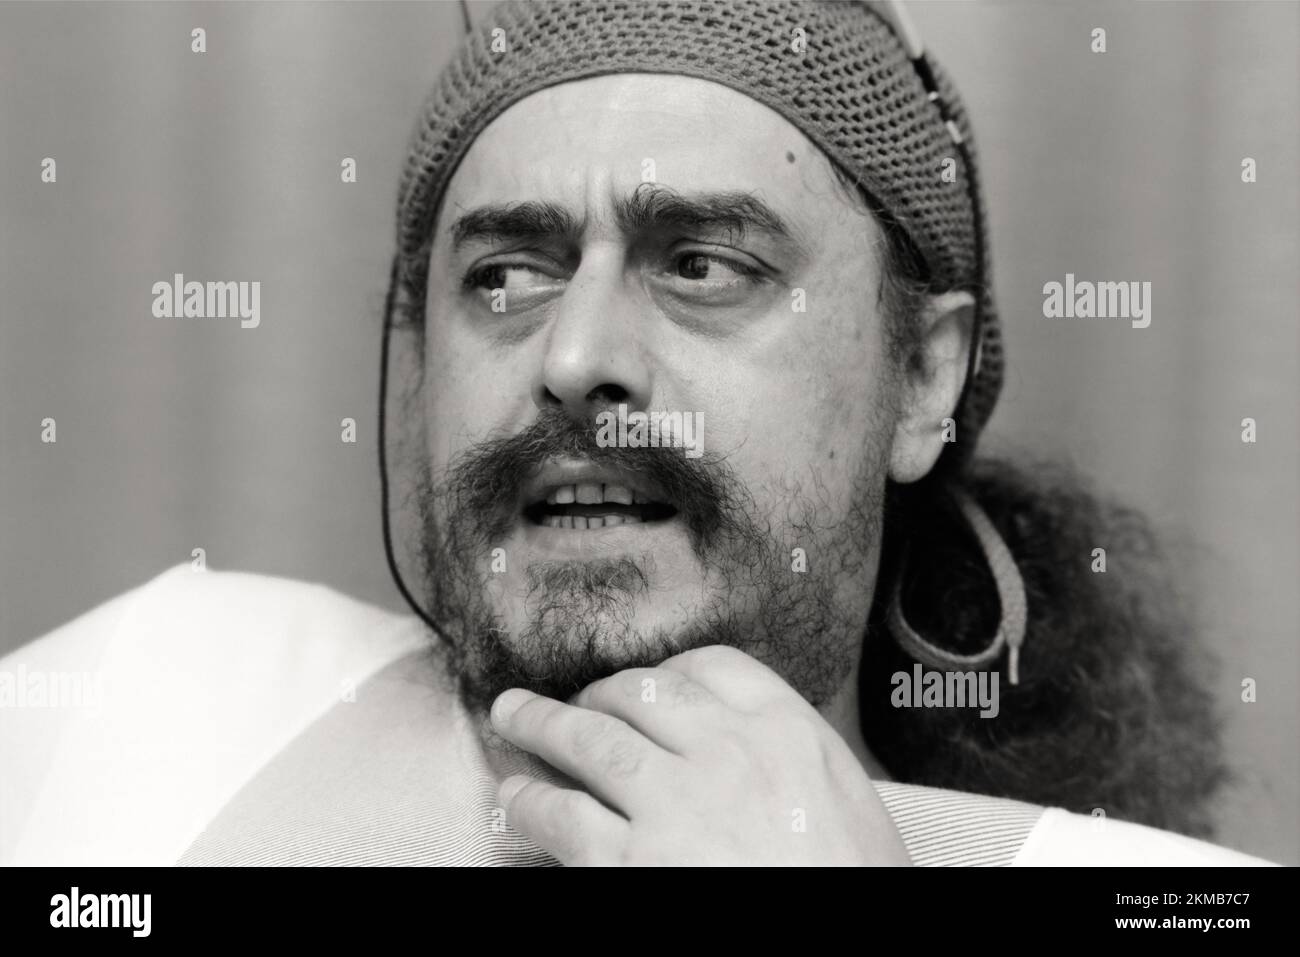 Egberto  Gismonti, Brazilian composer, guitarist and pianist, interview, Cologne, 1993 Stock Photo